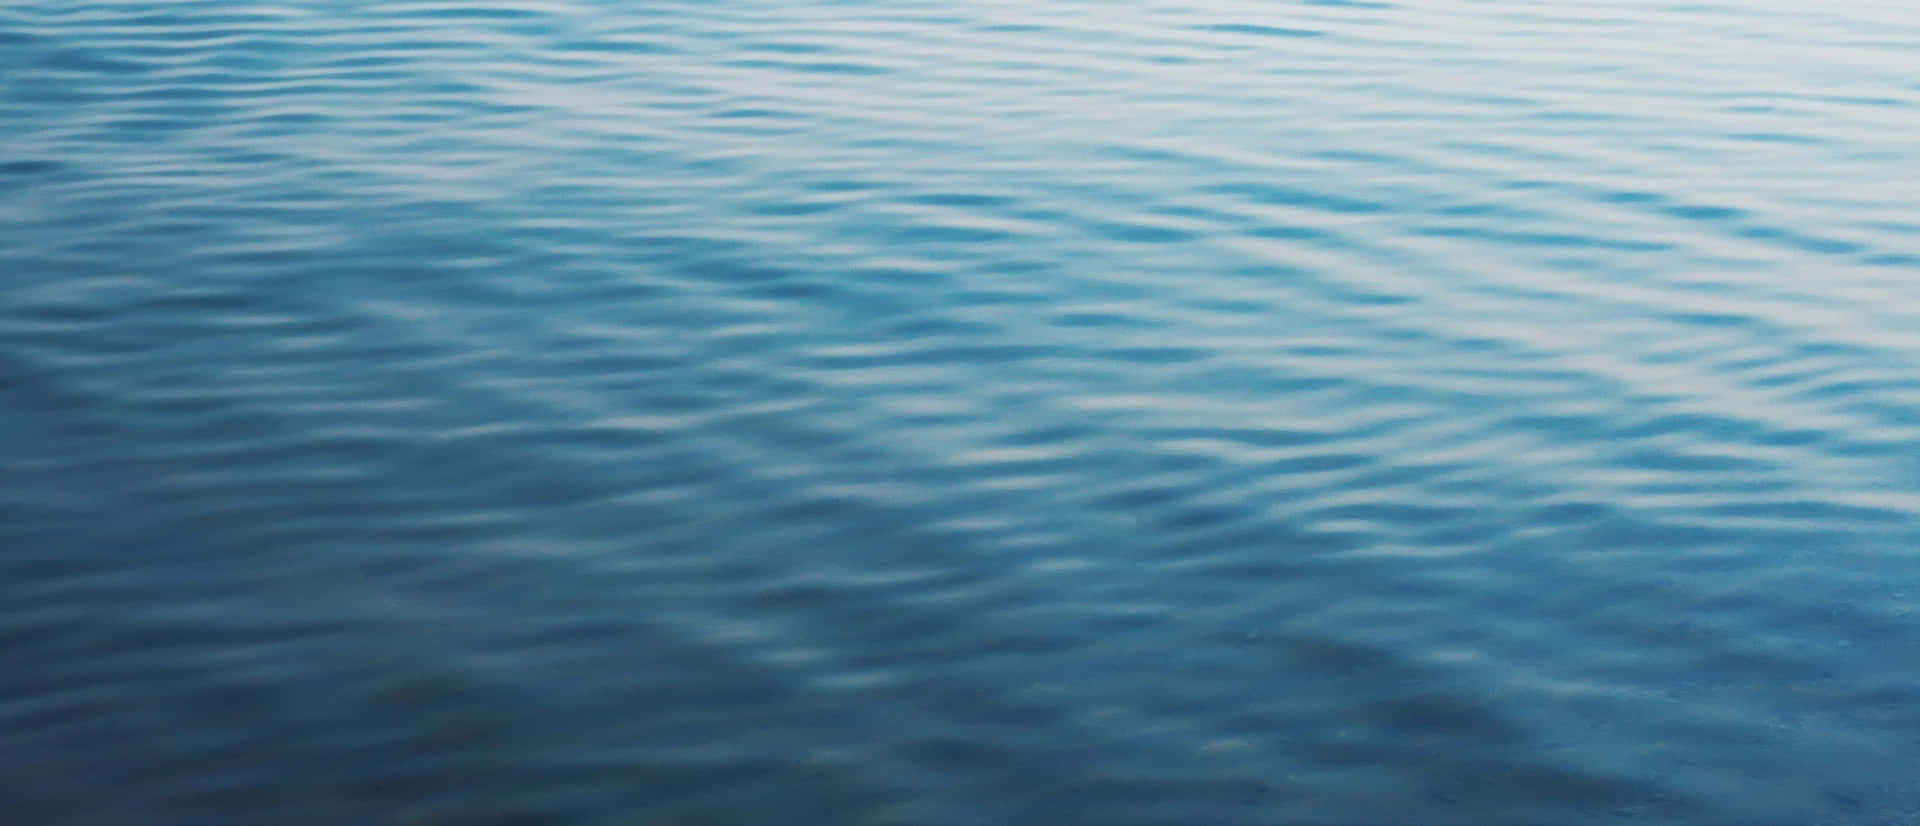 Take a dip in a bright blue ocean of restorative water